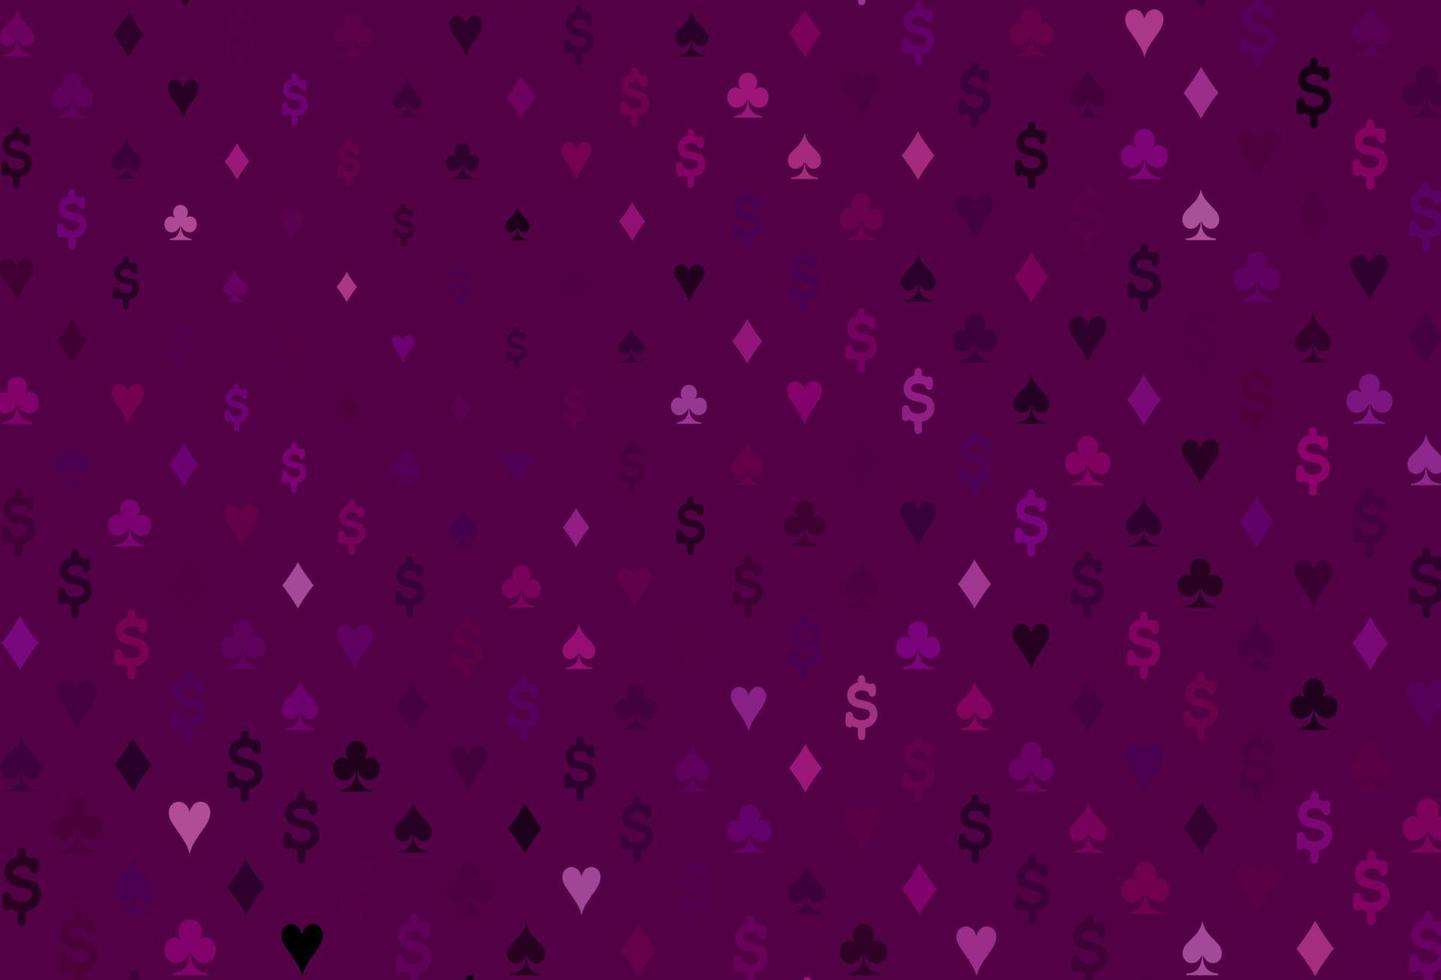 copertina vettoriale viola scuro con simboli di gioco d'azzardo.